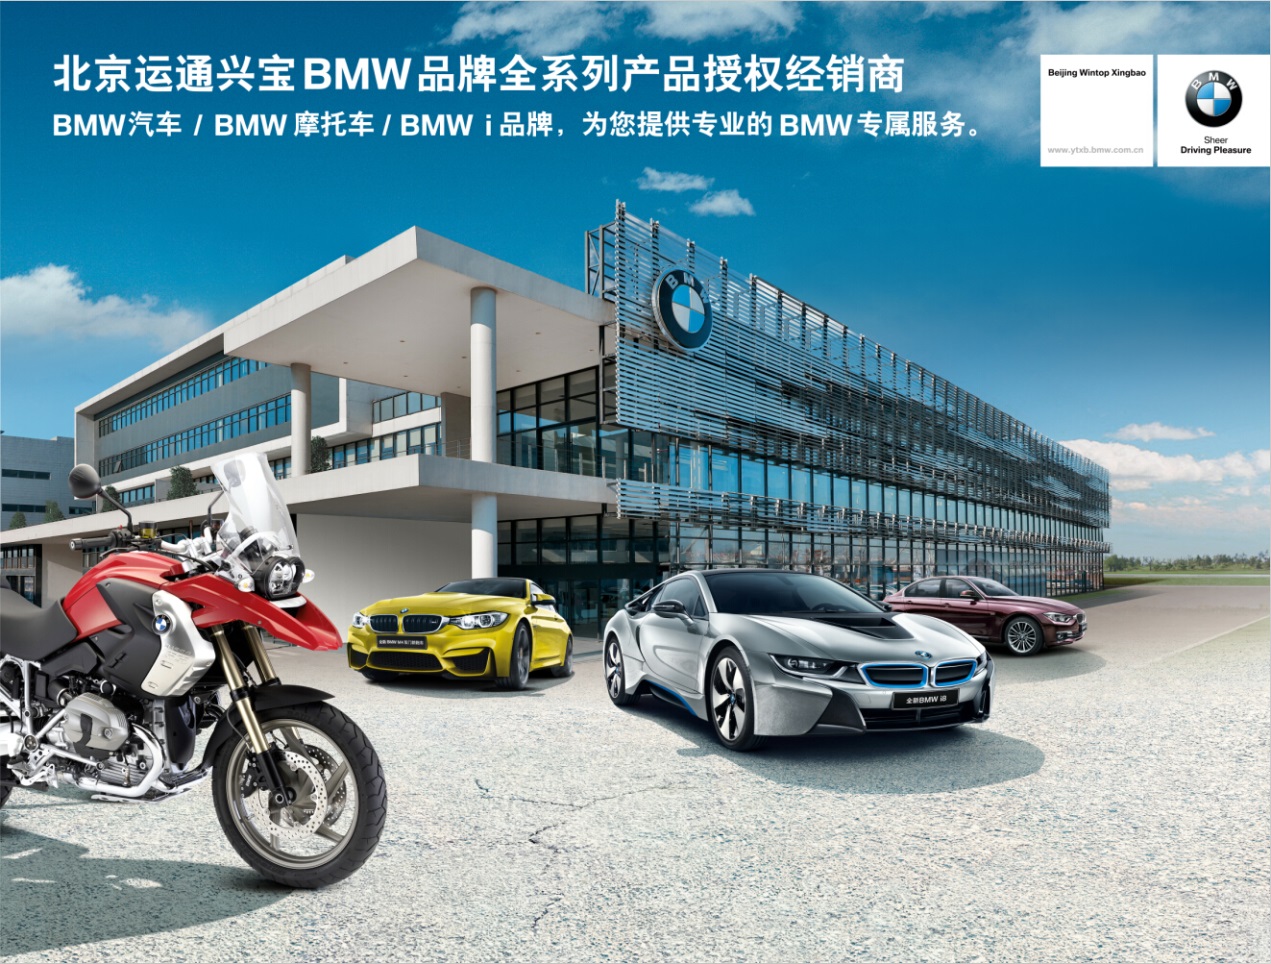 BMW尊选二手车鉴赏日北区首站开幕-北京运通